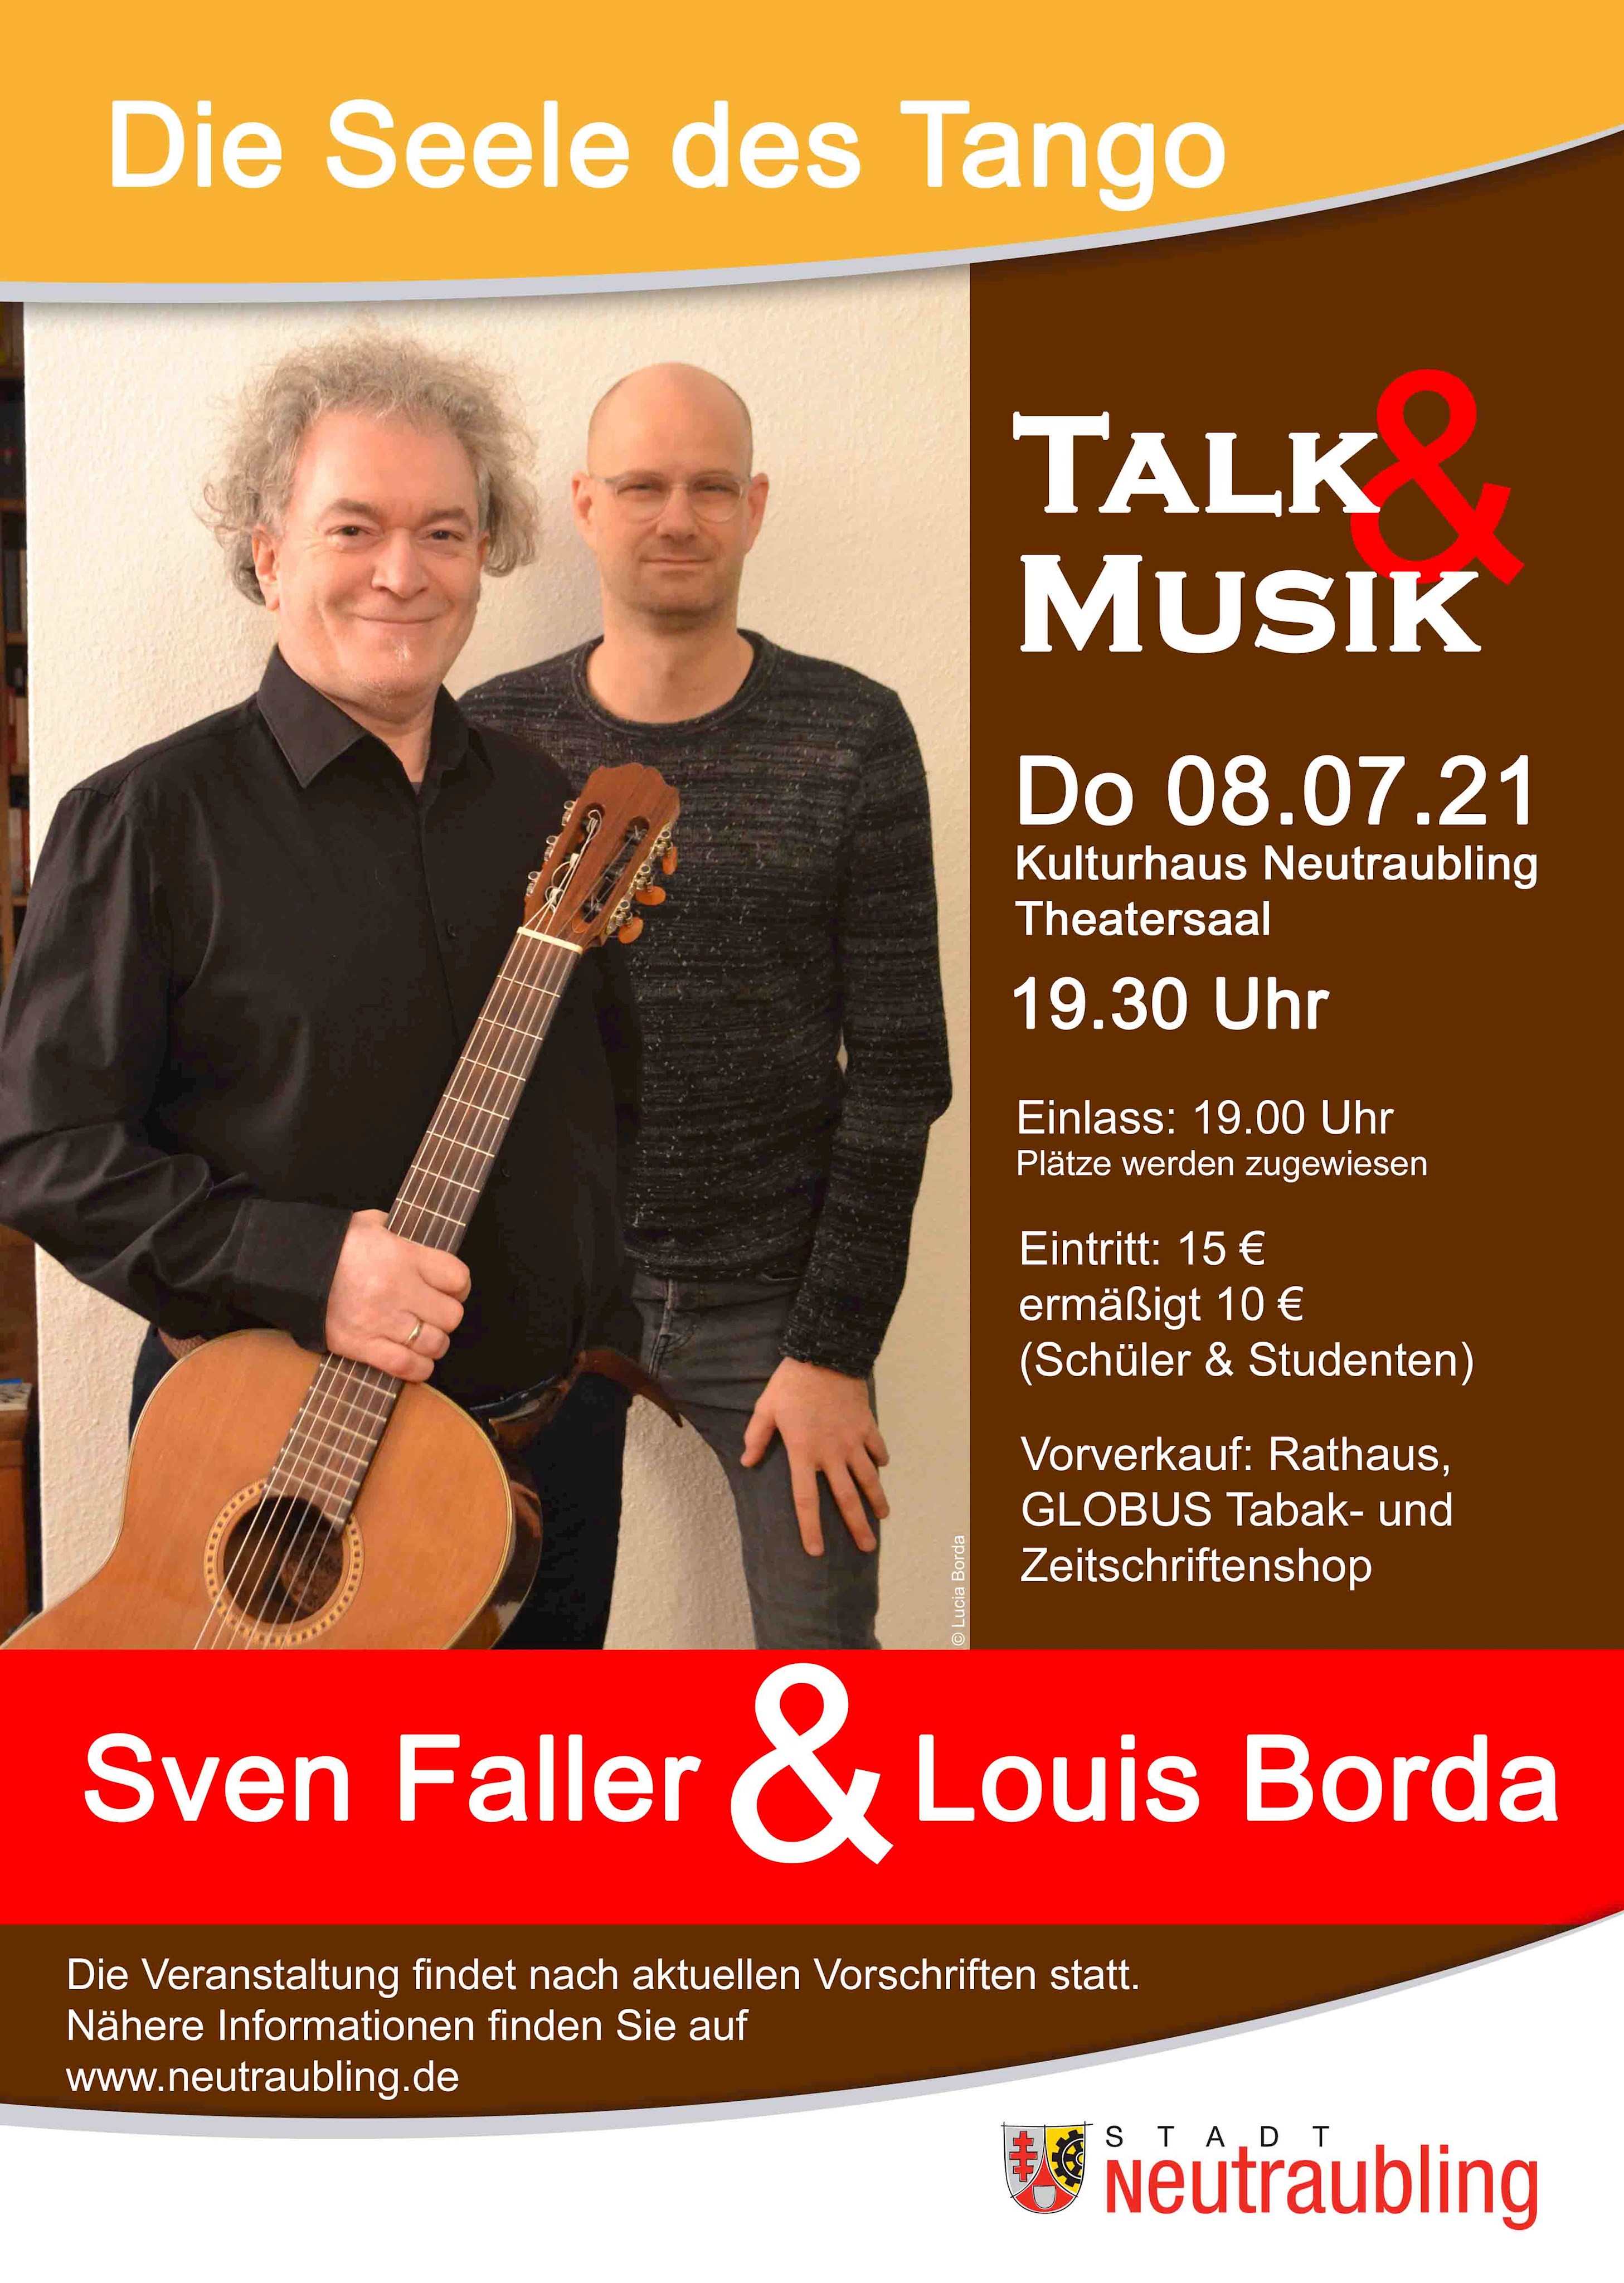 Sven Faller und Louis Borda präsentieren die Seele des Tango